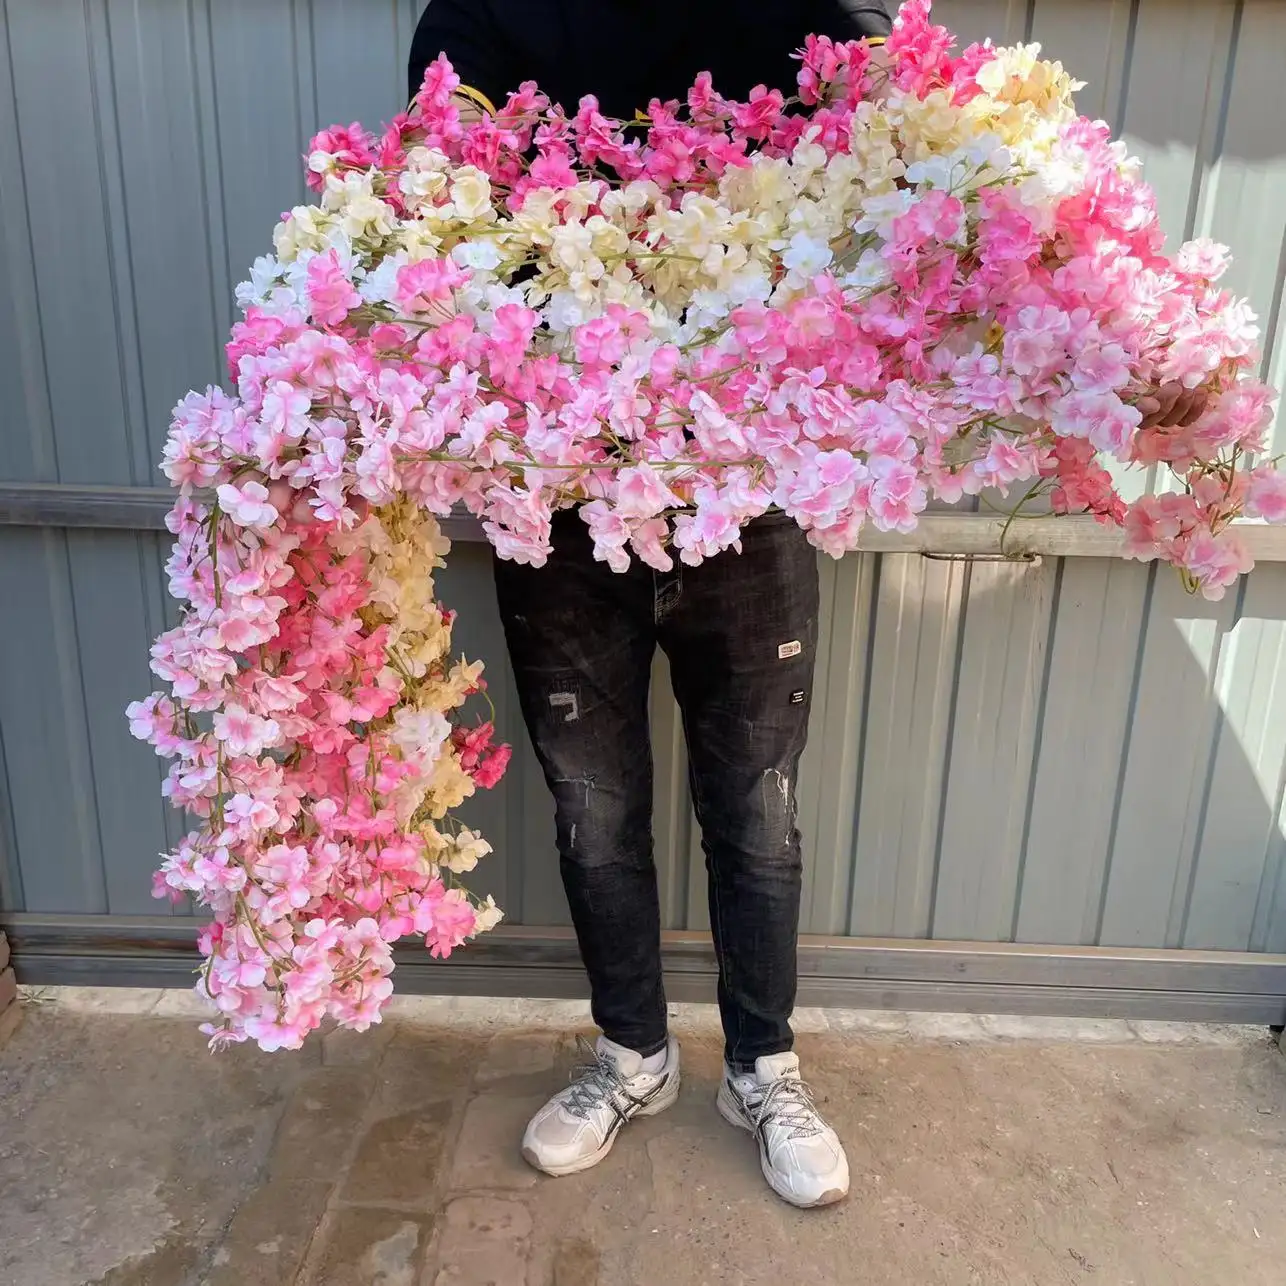 Vendita calda qualità 1.8 metri rosa fiori di ciliegio viti decorazione di nozze fiore artificiale ghirlanda